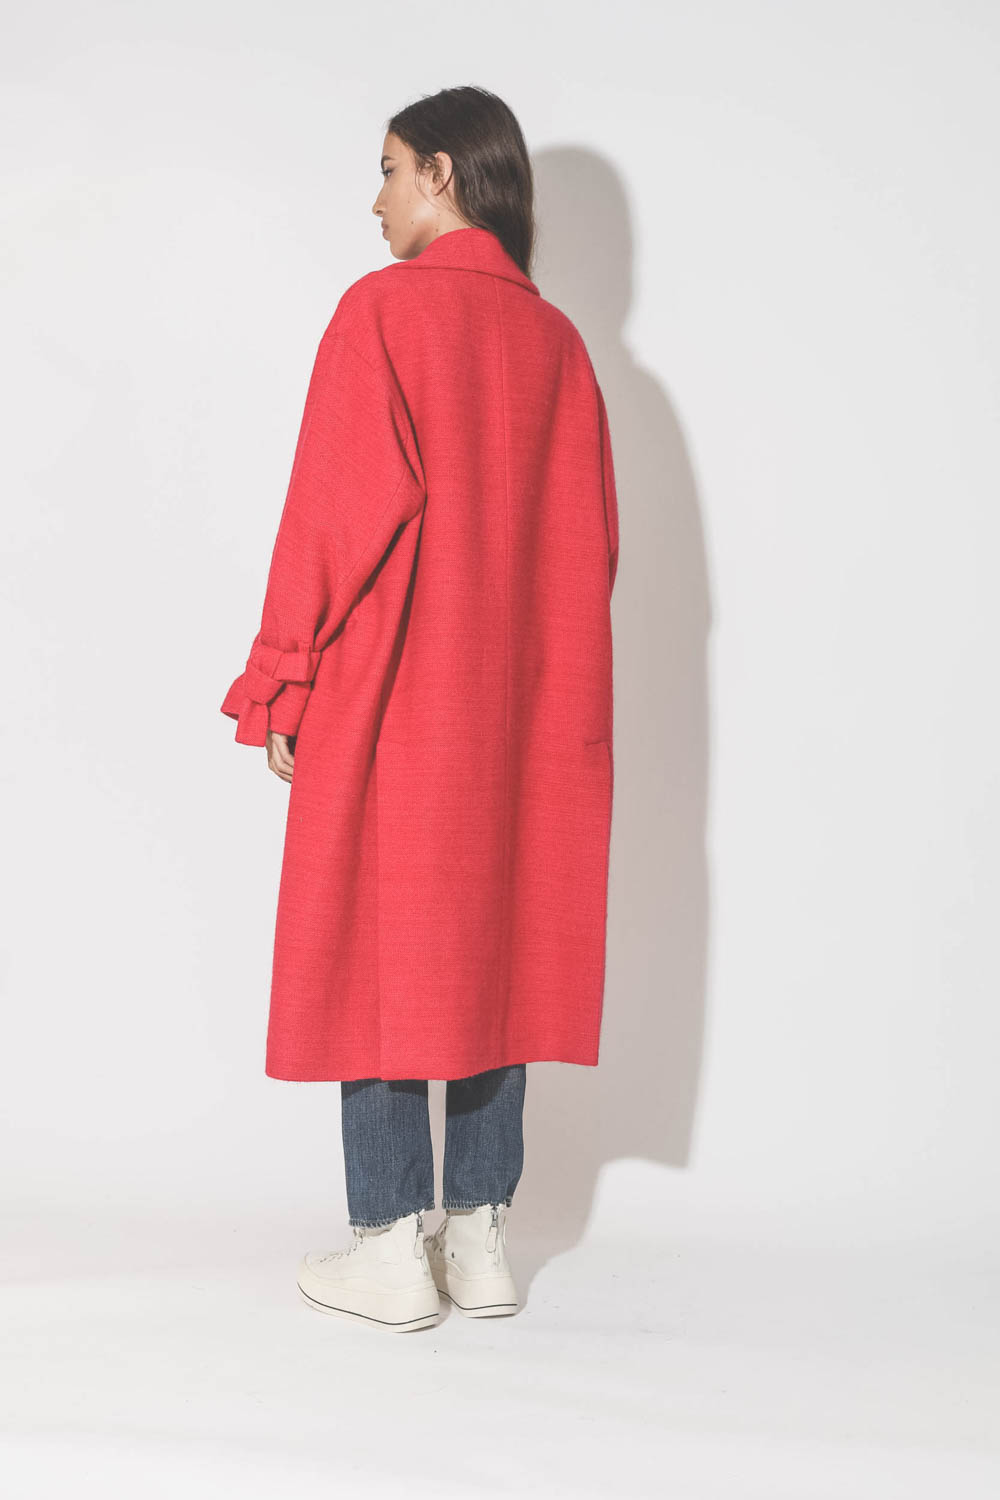 Manteau rouge Maison Flaneur. Porté de dos.